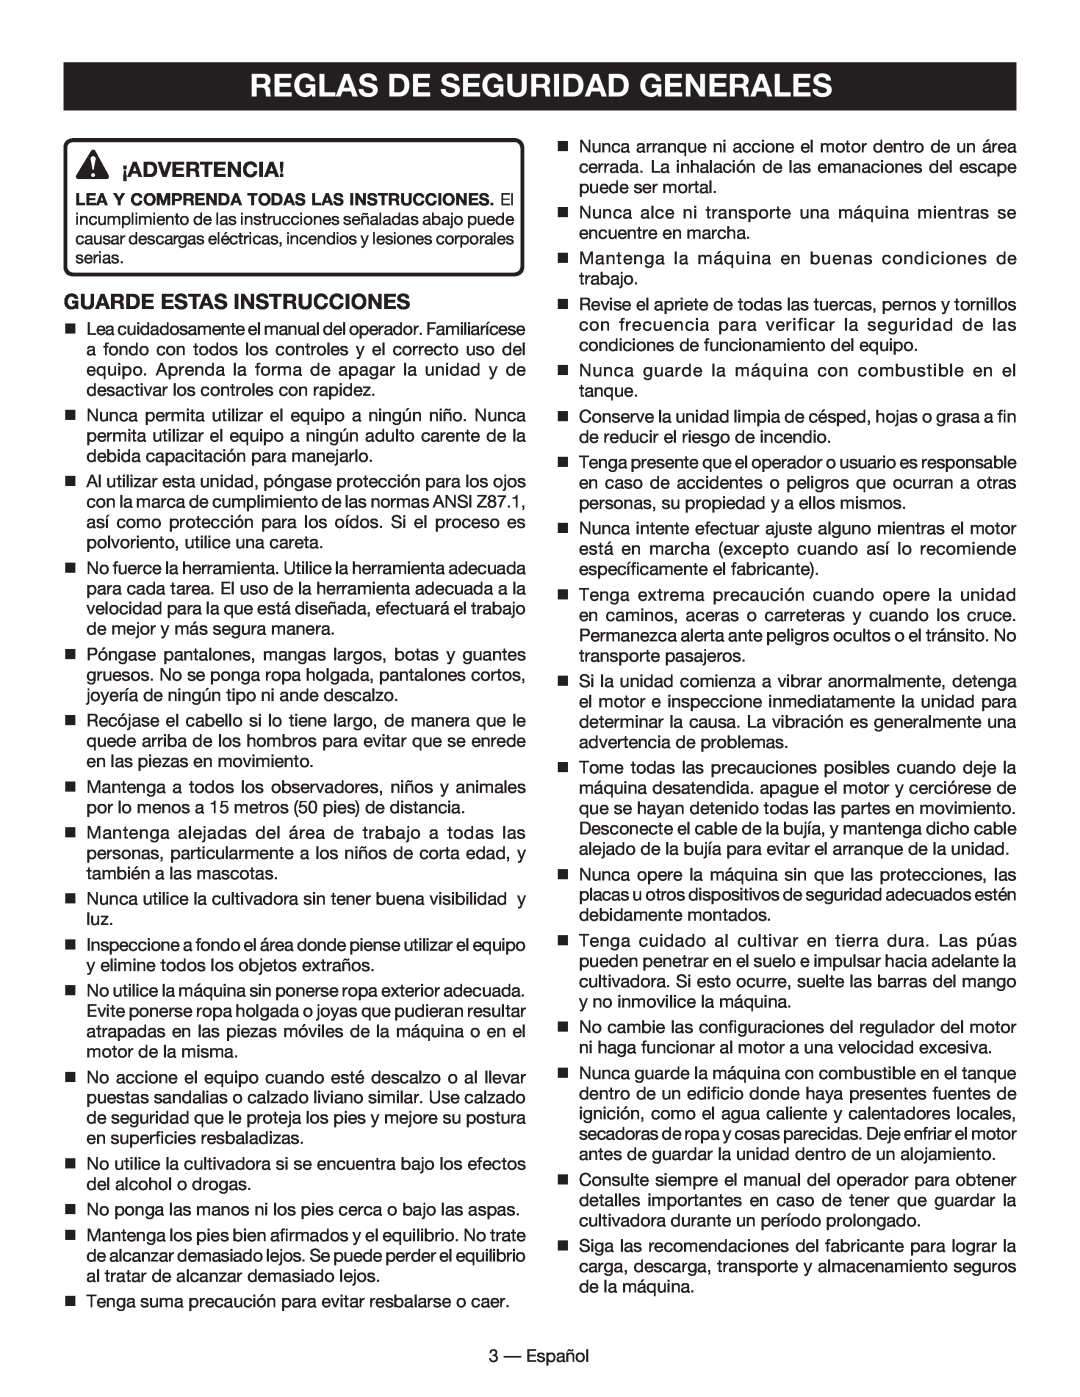 Homelite UT60526 manuel dutilisation Reglas De Seguridad Generales, ¡Advertencia, Guarde estas instrucciones 